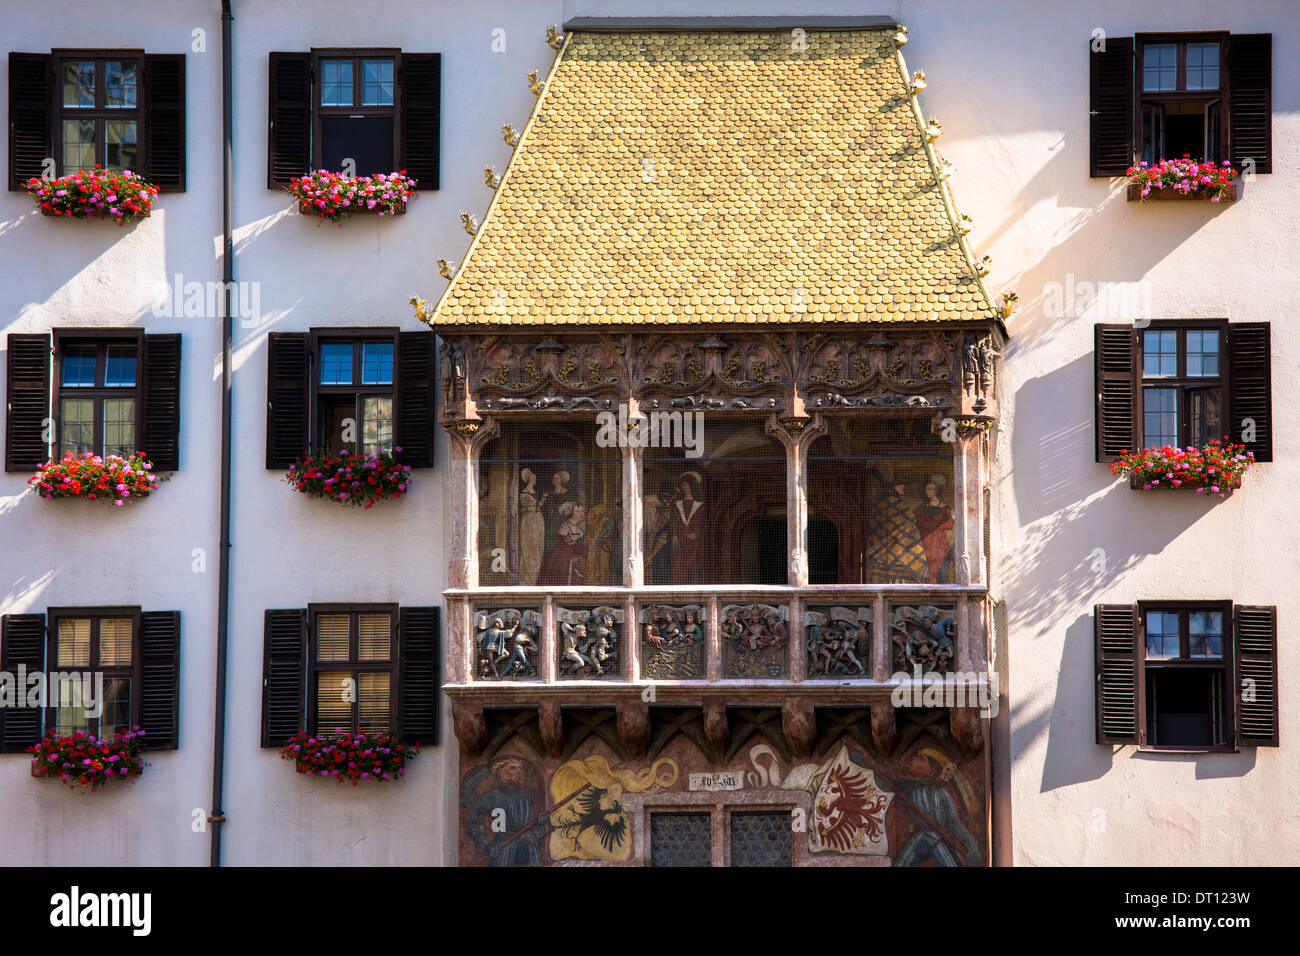 Goldenes Dachl, toit d'or, construit 1500 avec cheminée en cuivre doré carreaux dans Herzog Friedrich Strasse à Innsbruck au Tyrol Autriche Banque D'Images